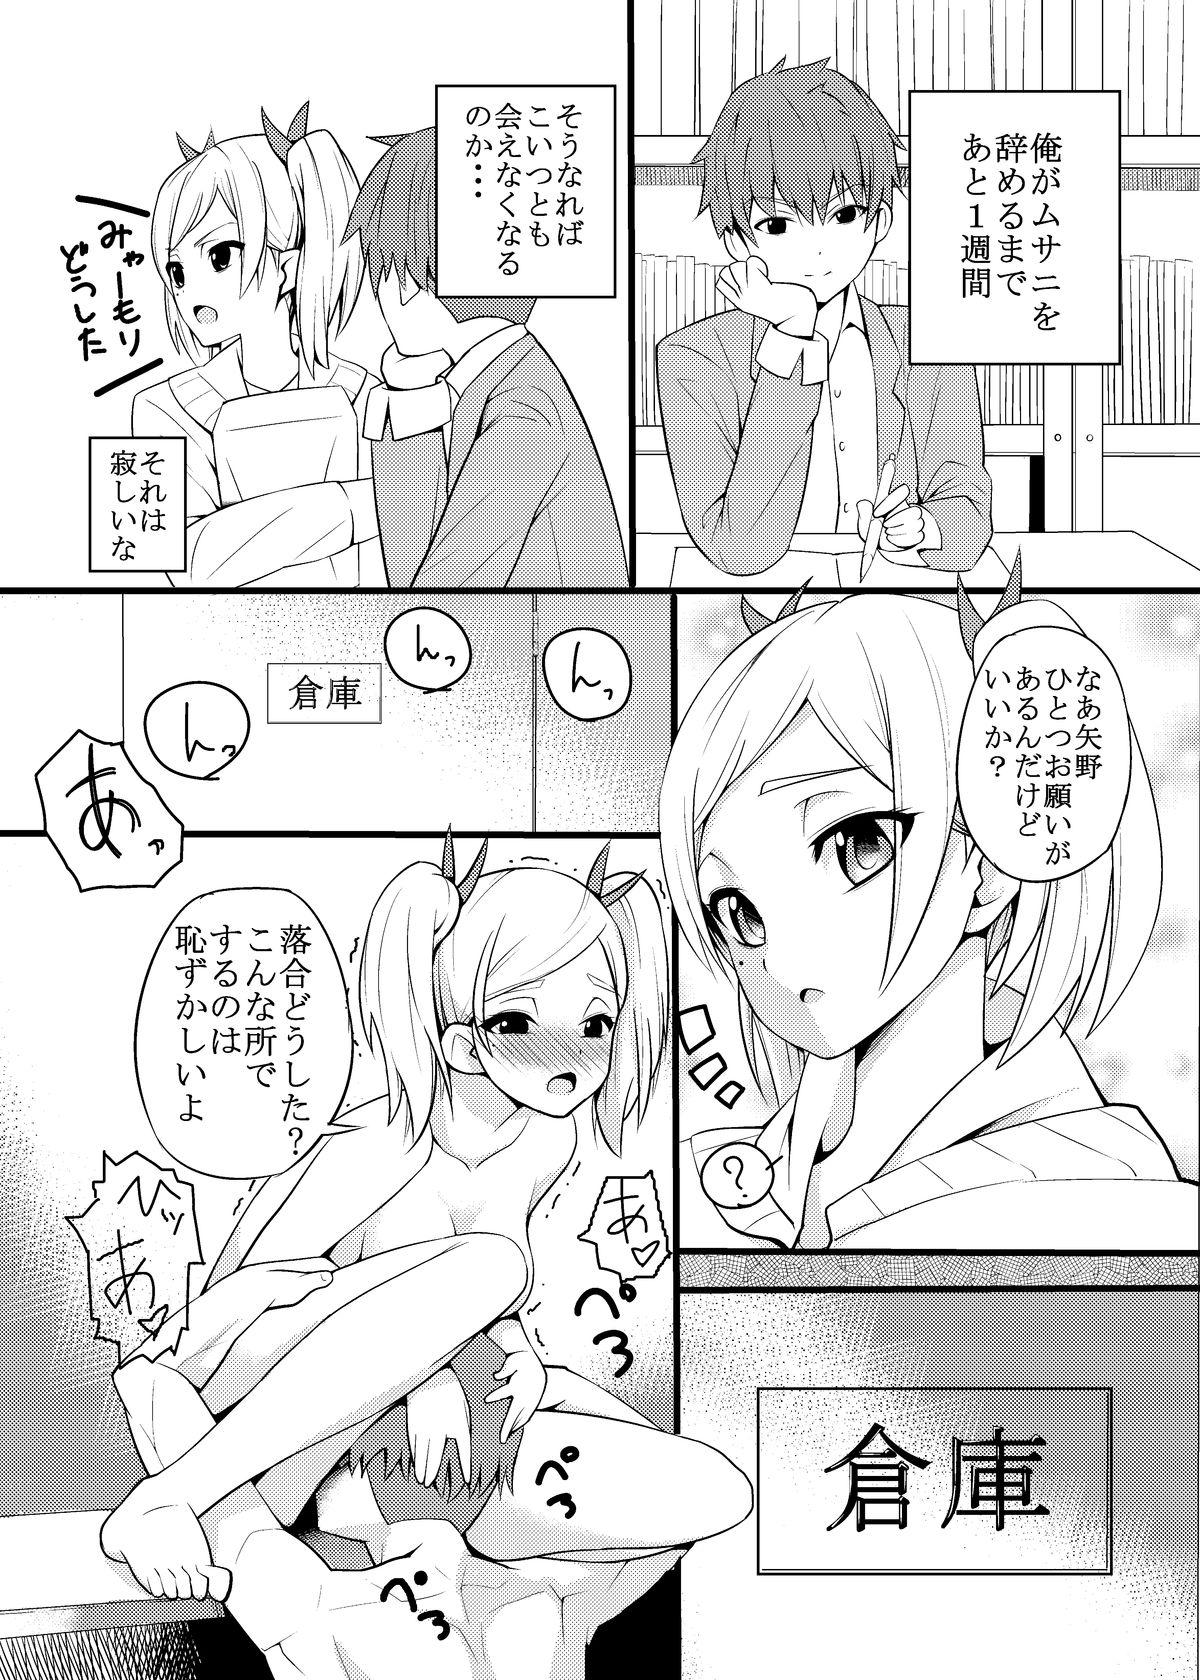 Ametur Porn Yano Senpai no H na Manga - Shirobako Cam - Page 2